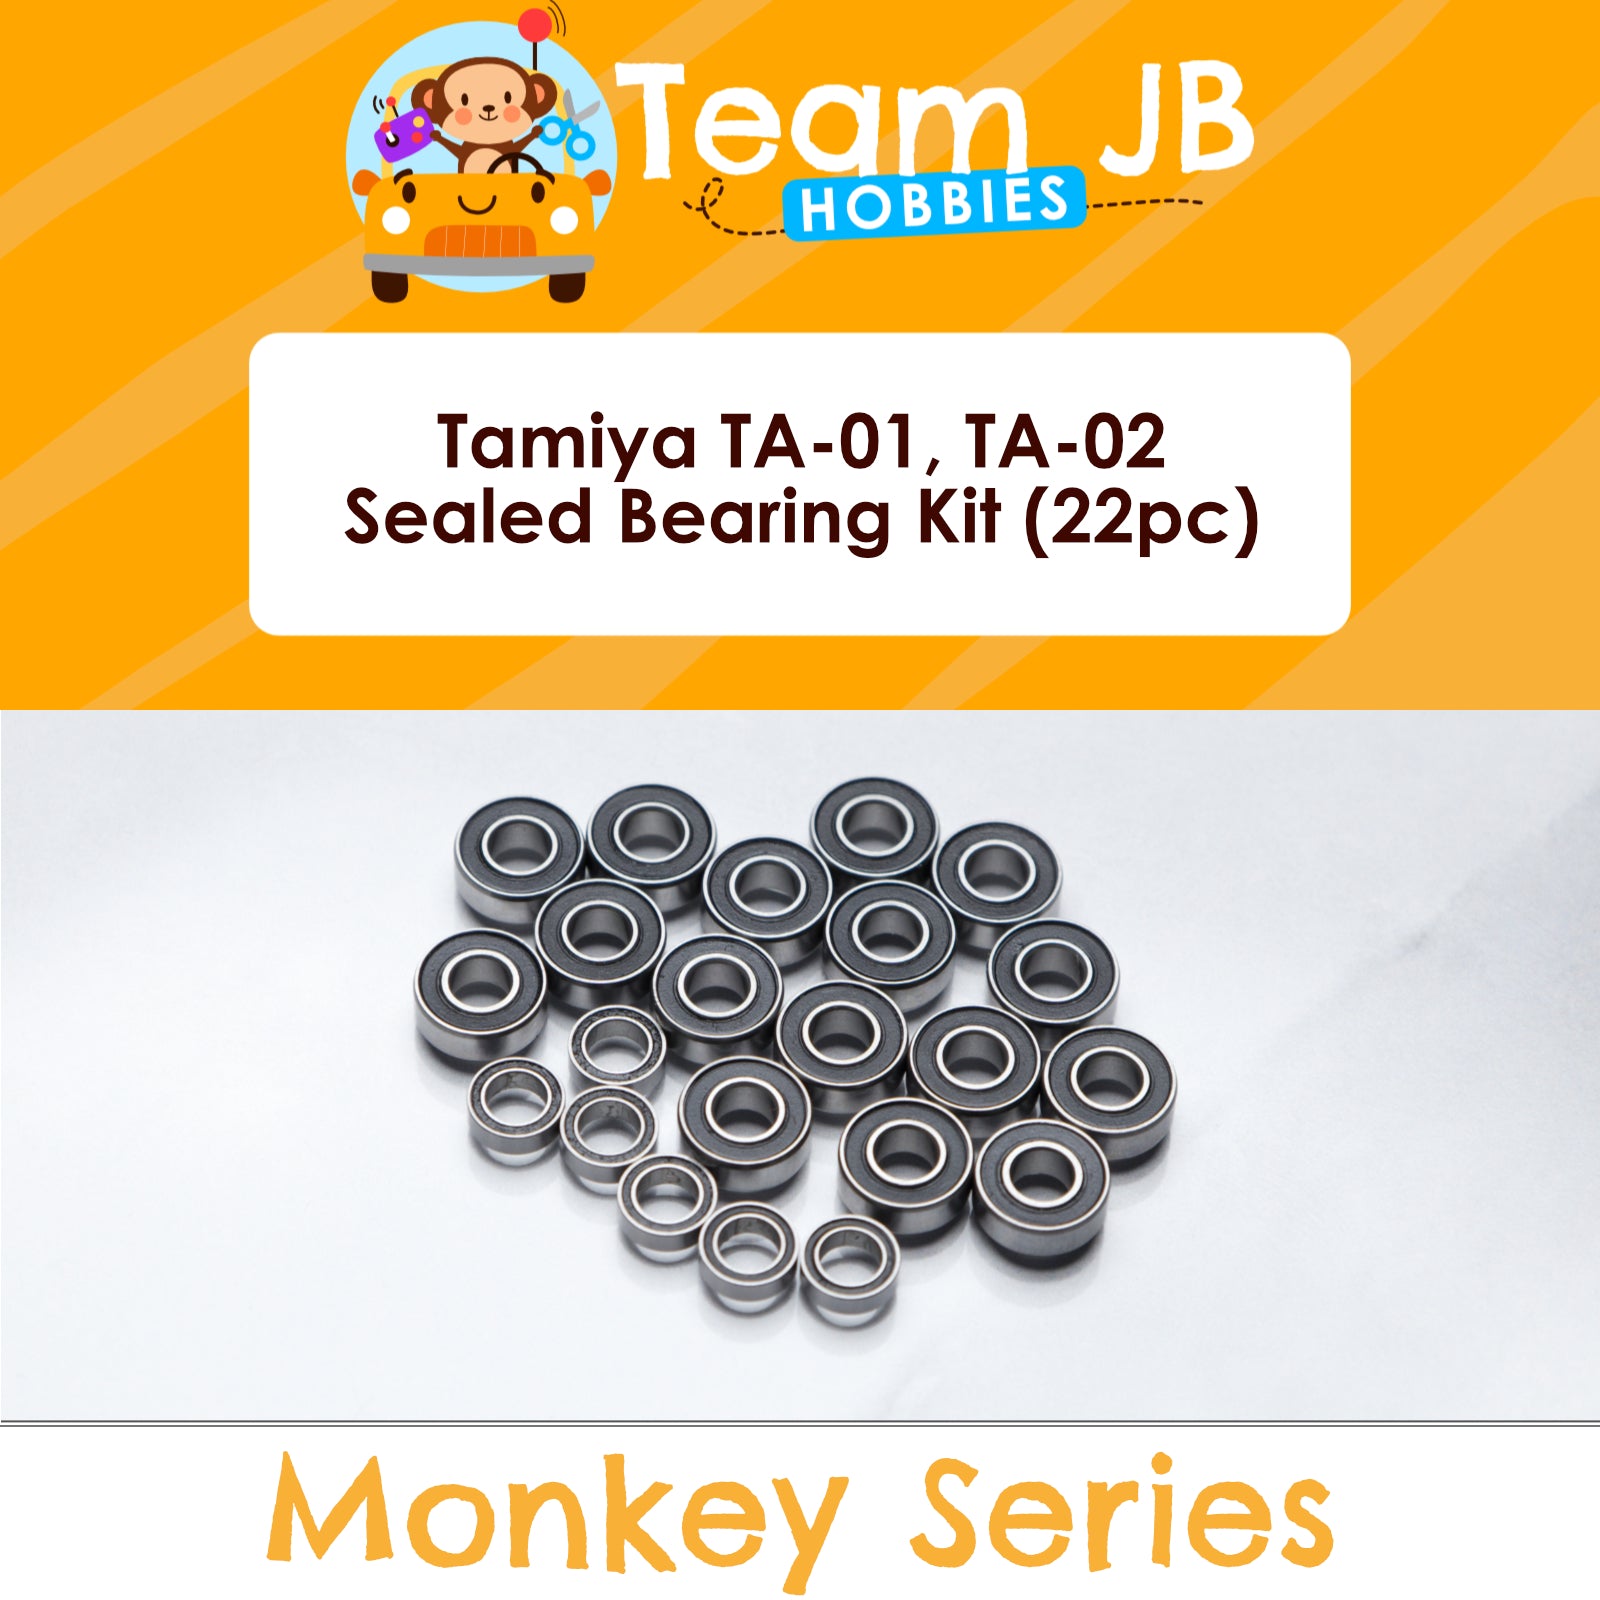 Tamiya TA-01, TA-02 - Sealed Bearing Kit